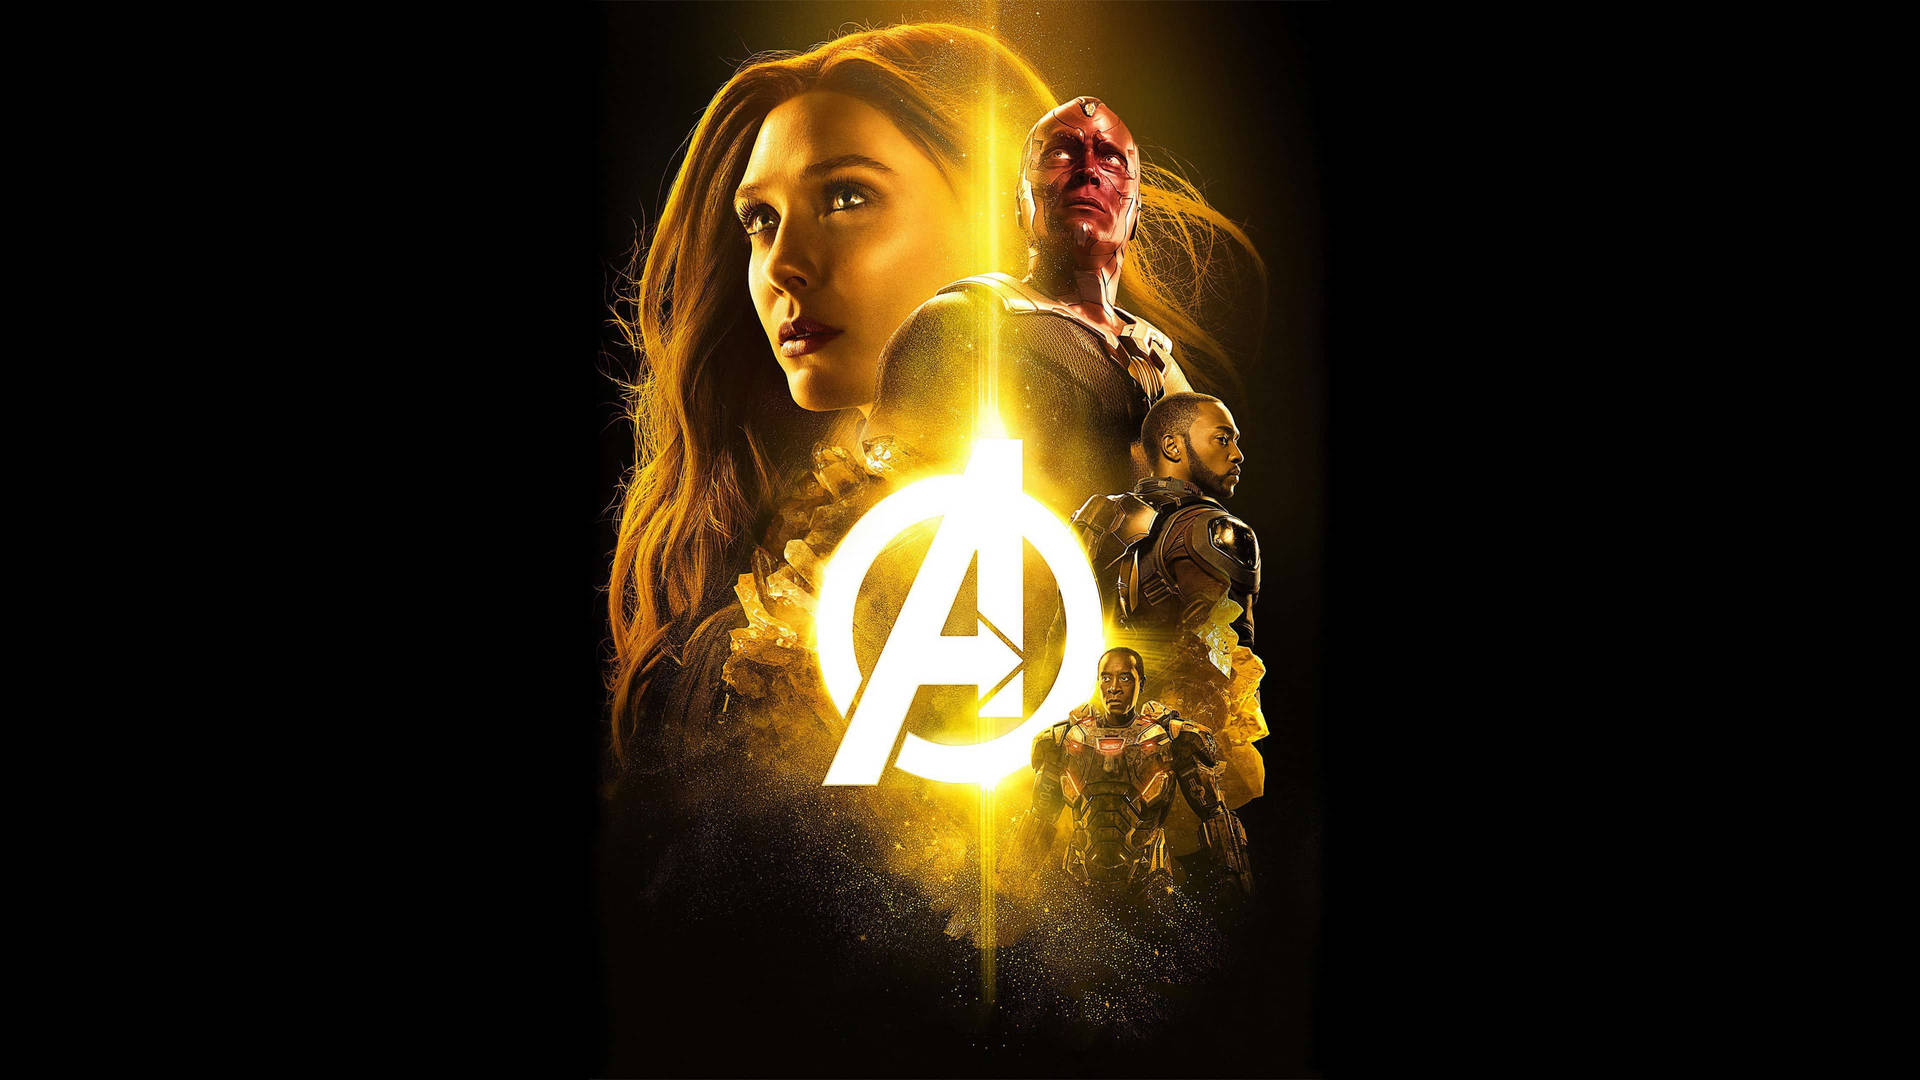 Marvel Avengers Logo Background